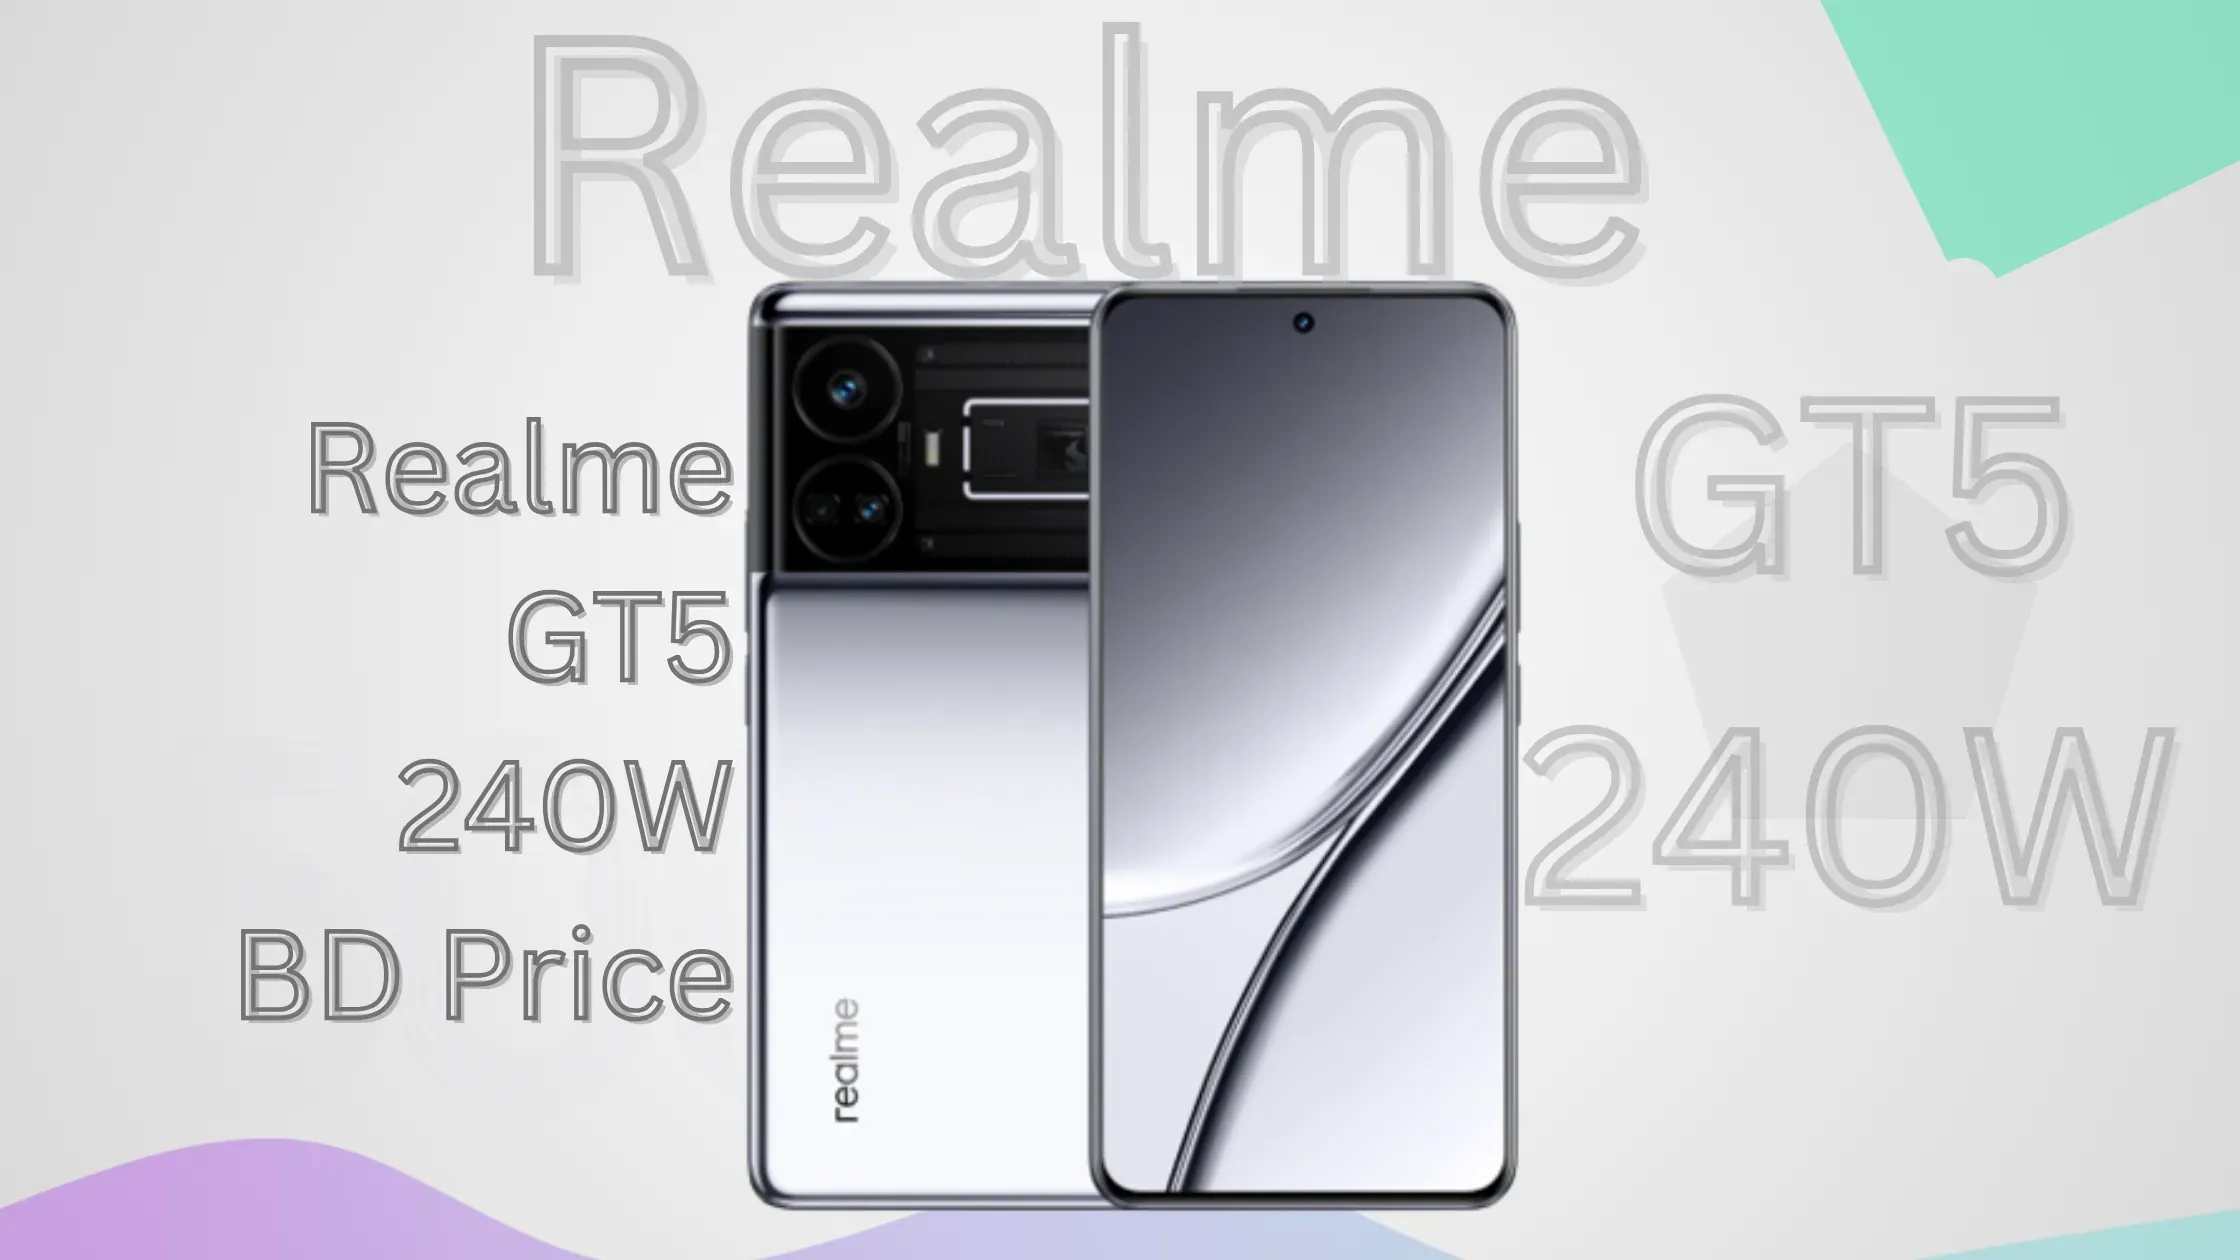 Realme GT5 240W BD Price